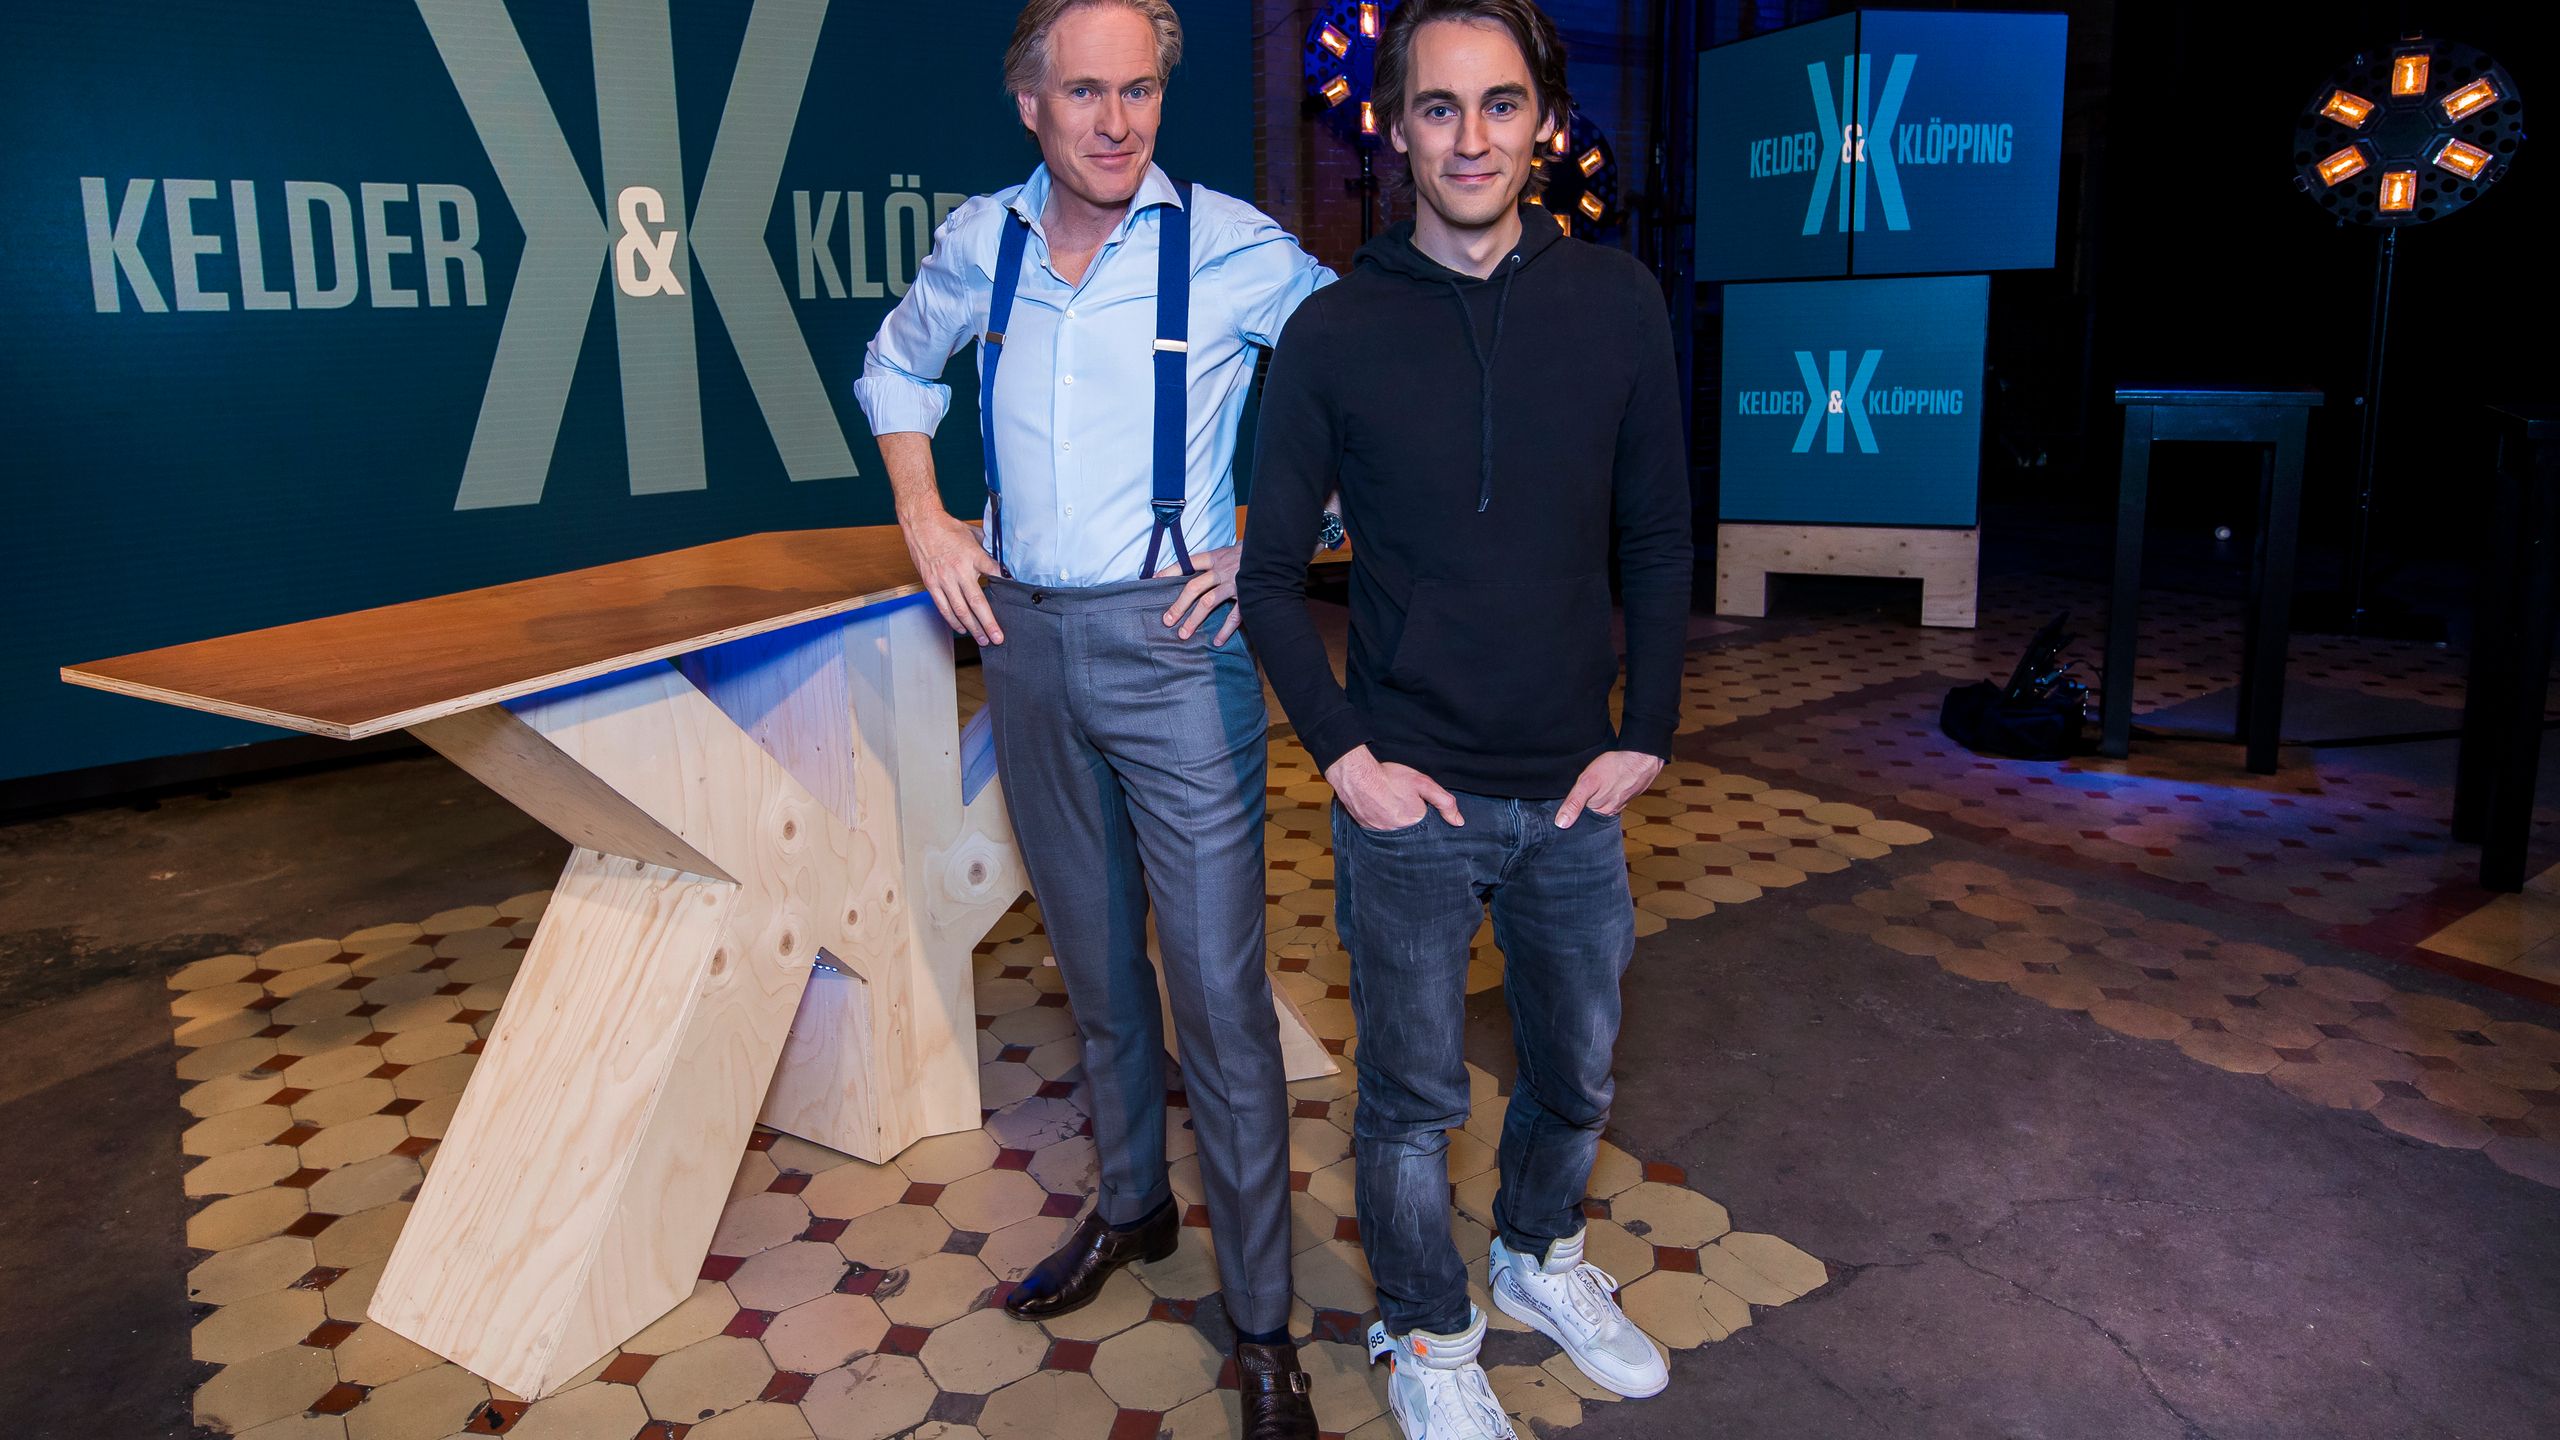 Foto: Journalist en tv-persoonlijkheid Jort Kelder loopt als een rode draad door de carrière van Alexander Klöpping. Bron: NPO